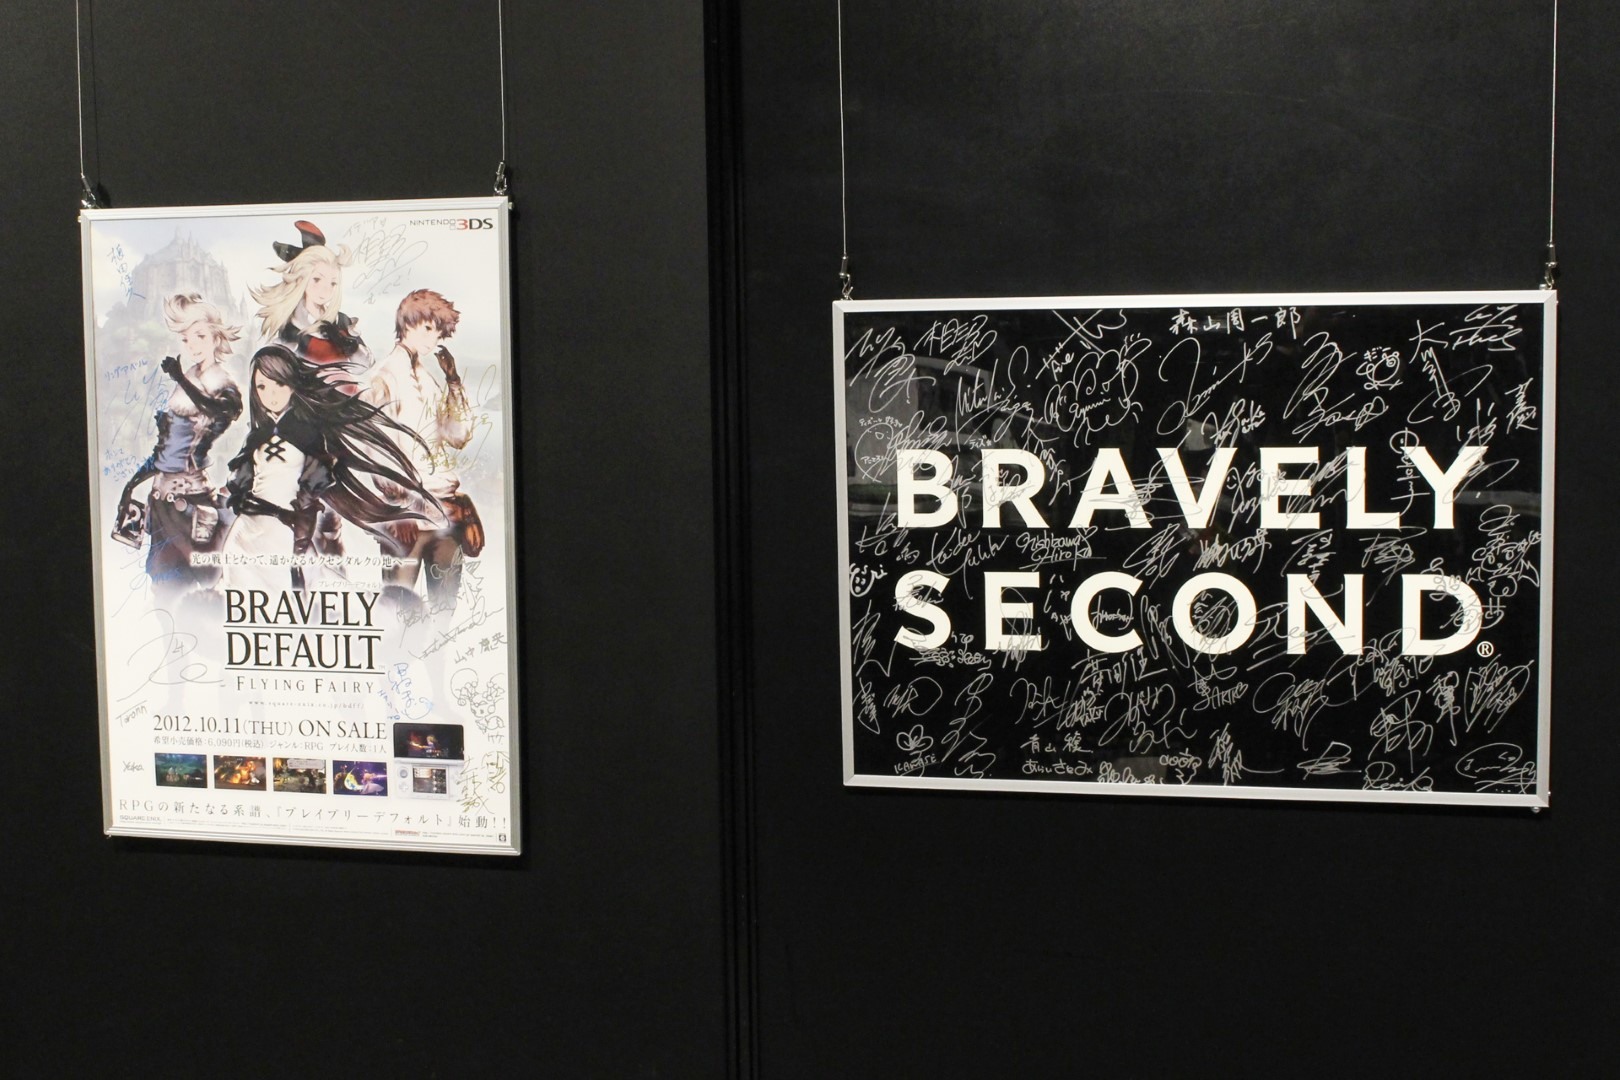 日本《Bravely Default》10 周年记念展现场报导展示超过两百张以上插图原画插图10